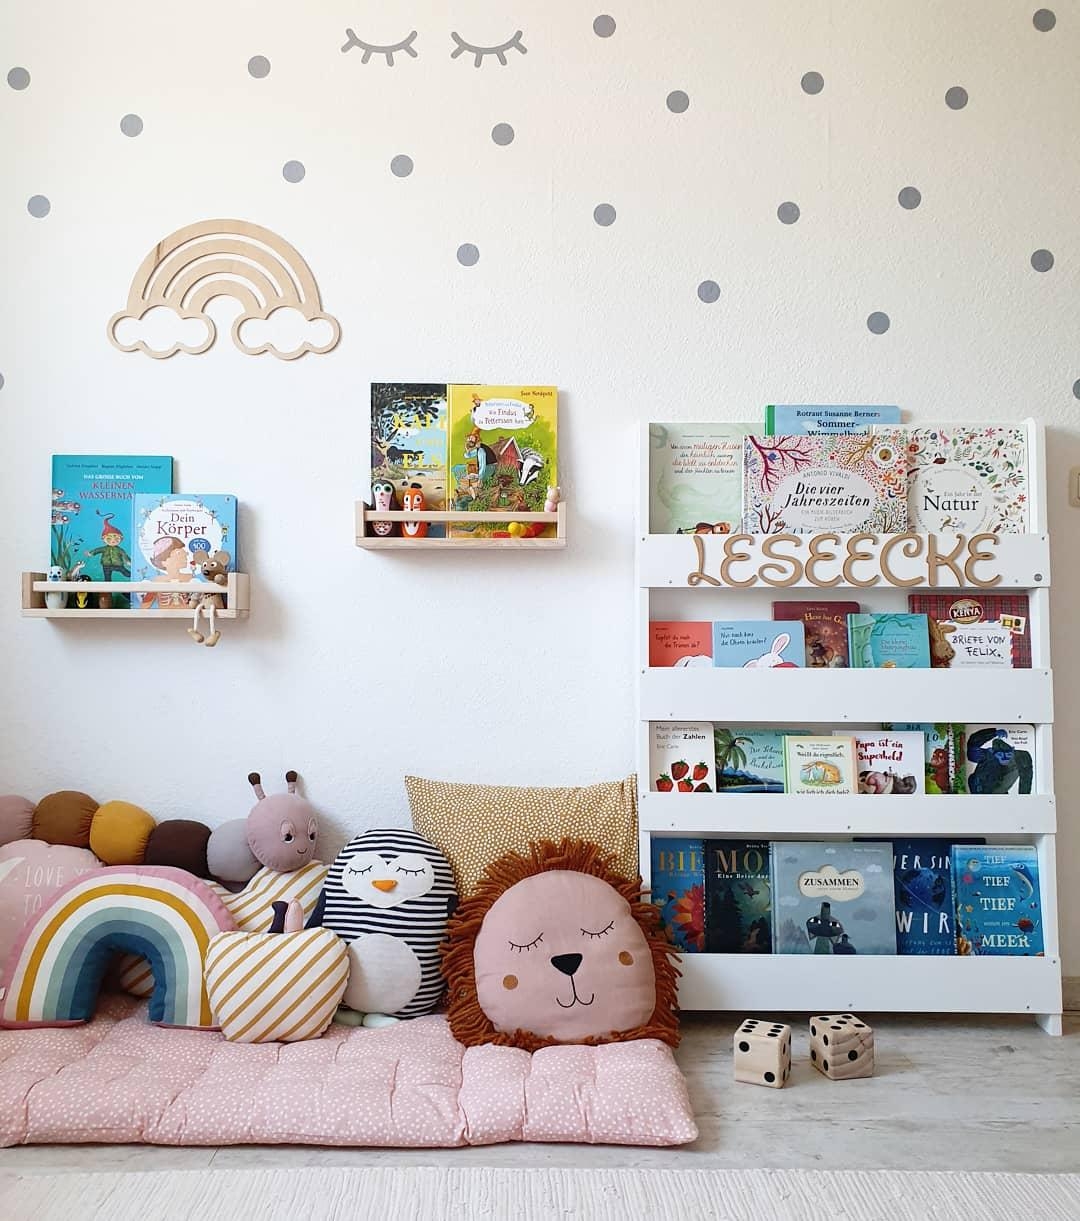 Unsere Leseecke im Kinderzimmer
#kinderzimmer #bücherregal #couchliebt